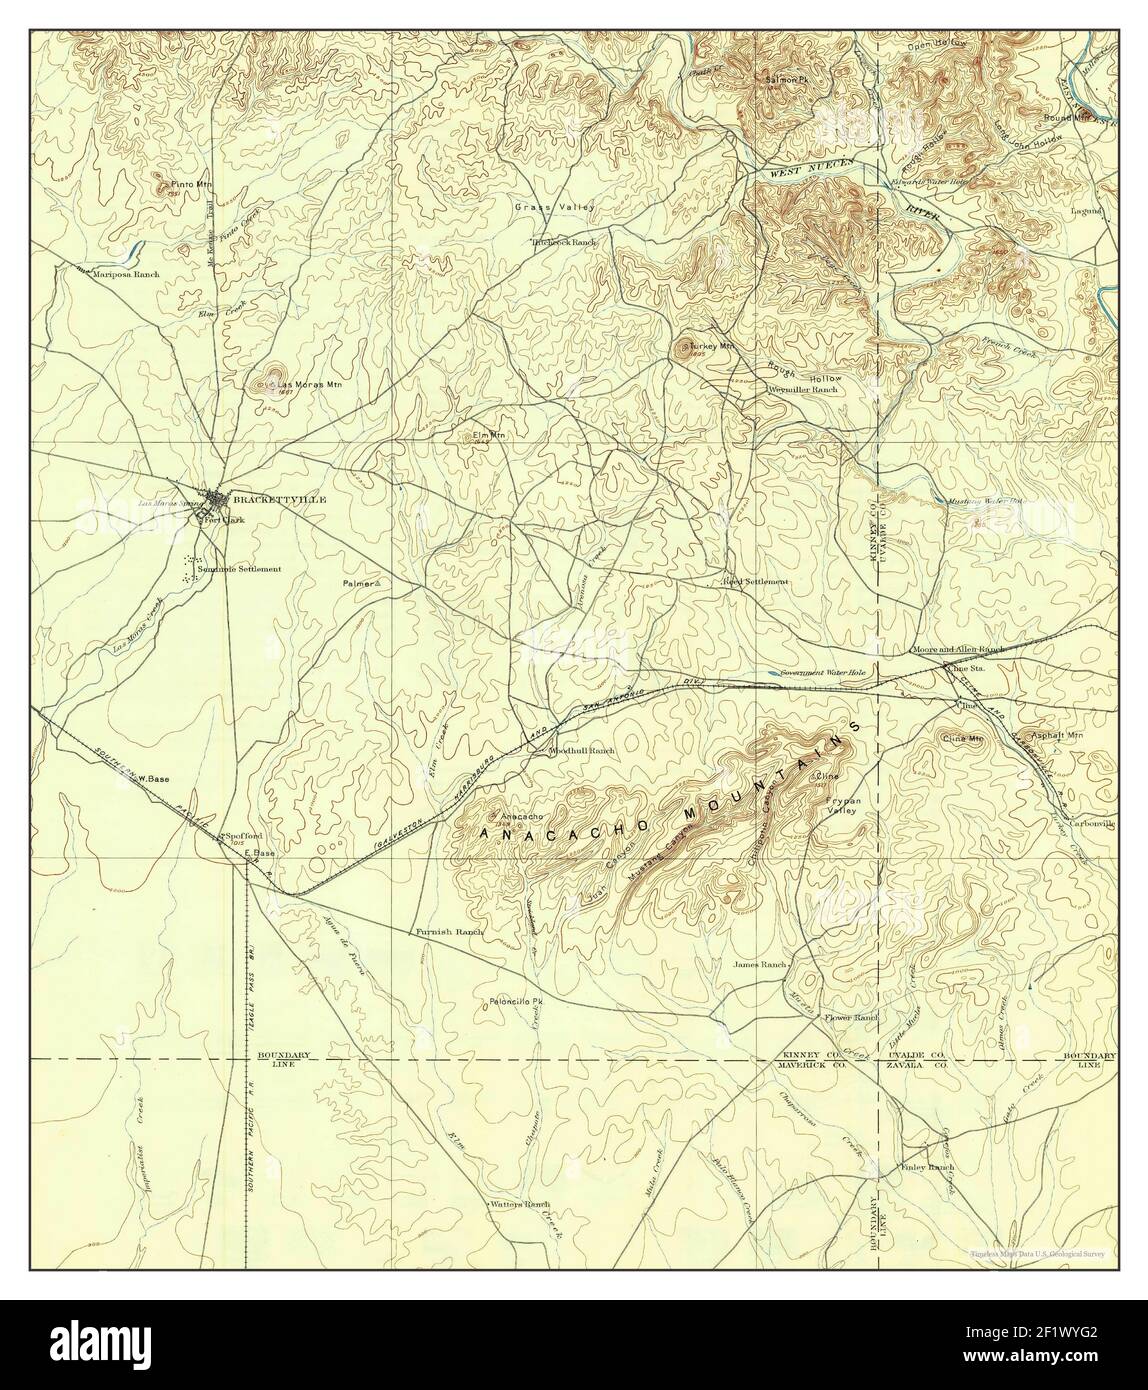 Brackettville, Texas, carte 1897, 1:125000, États-Unis d'Amérique par Timeless Maps, données U.S. Geological Survey Banque D'Images